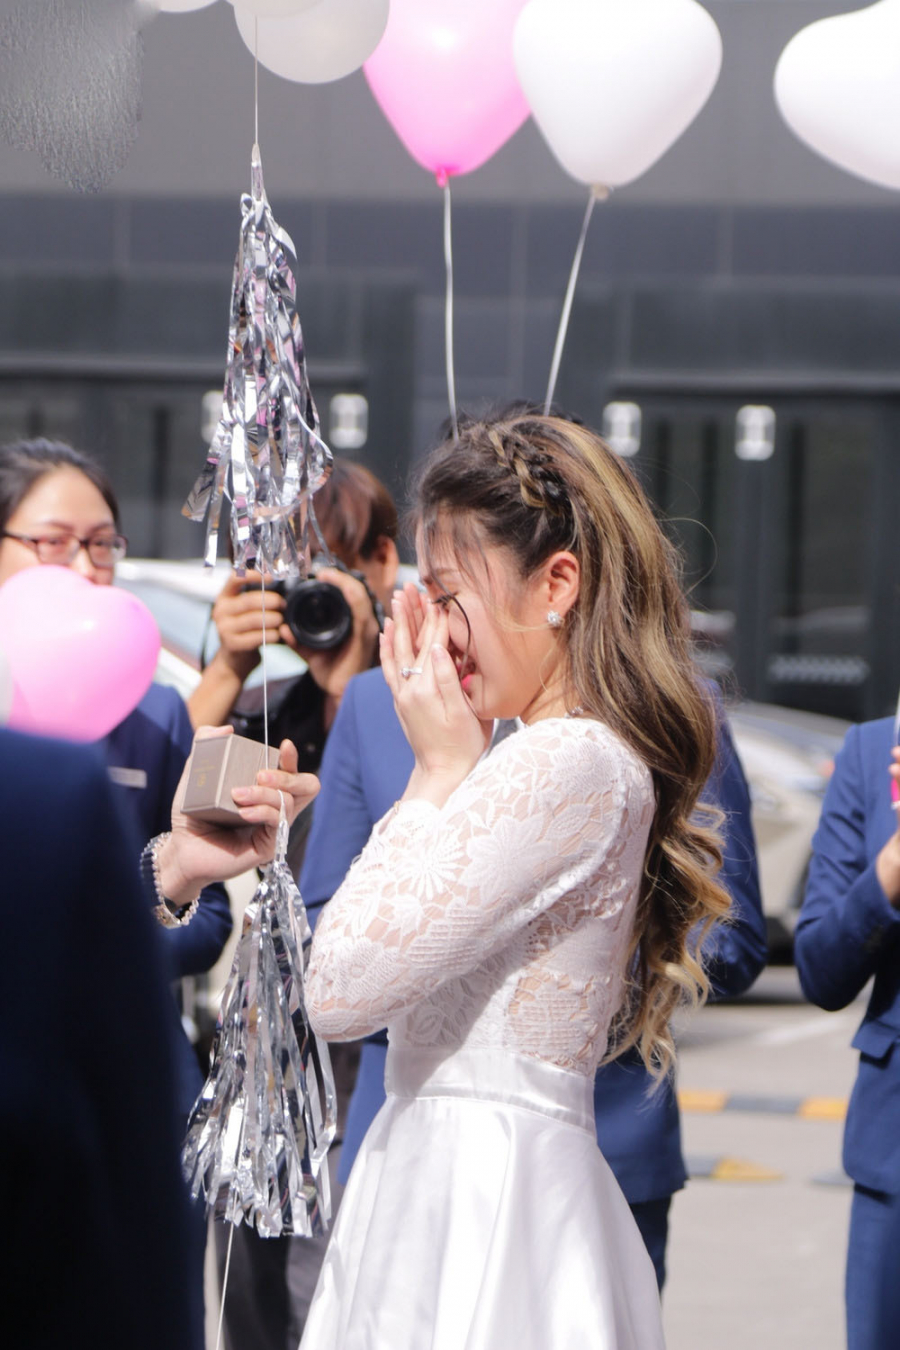 Bạn gái hot girl vô cùng bất ngờ và xúc động trước khoảnh khắc Lâm Chấn Khang tiến lại cầu hôn.    